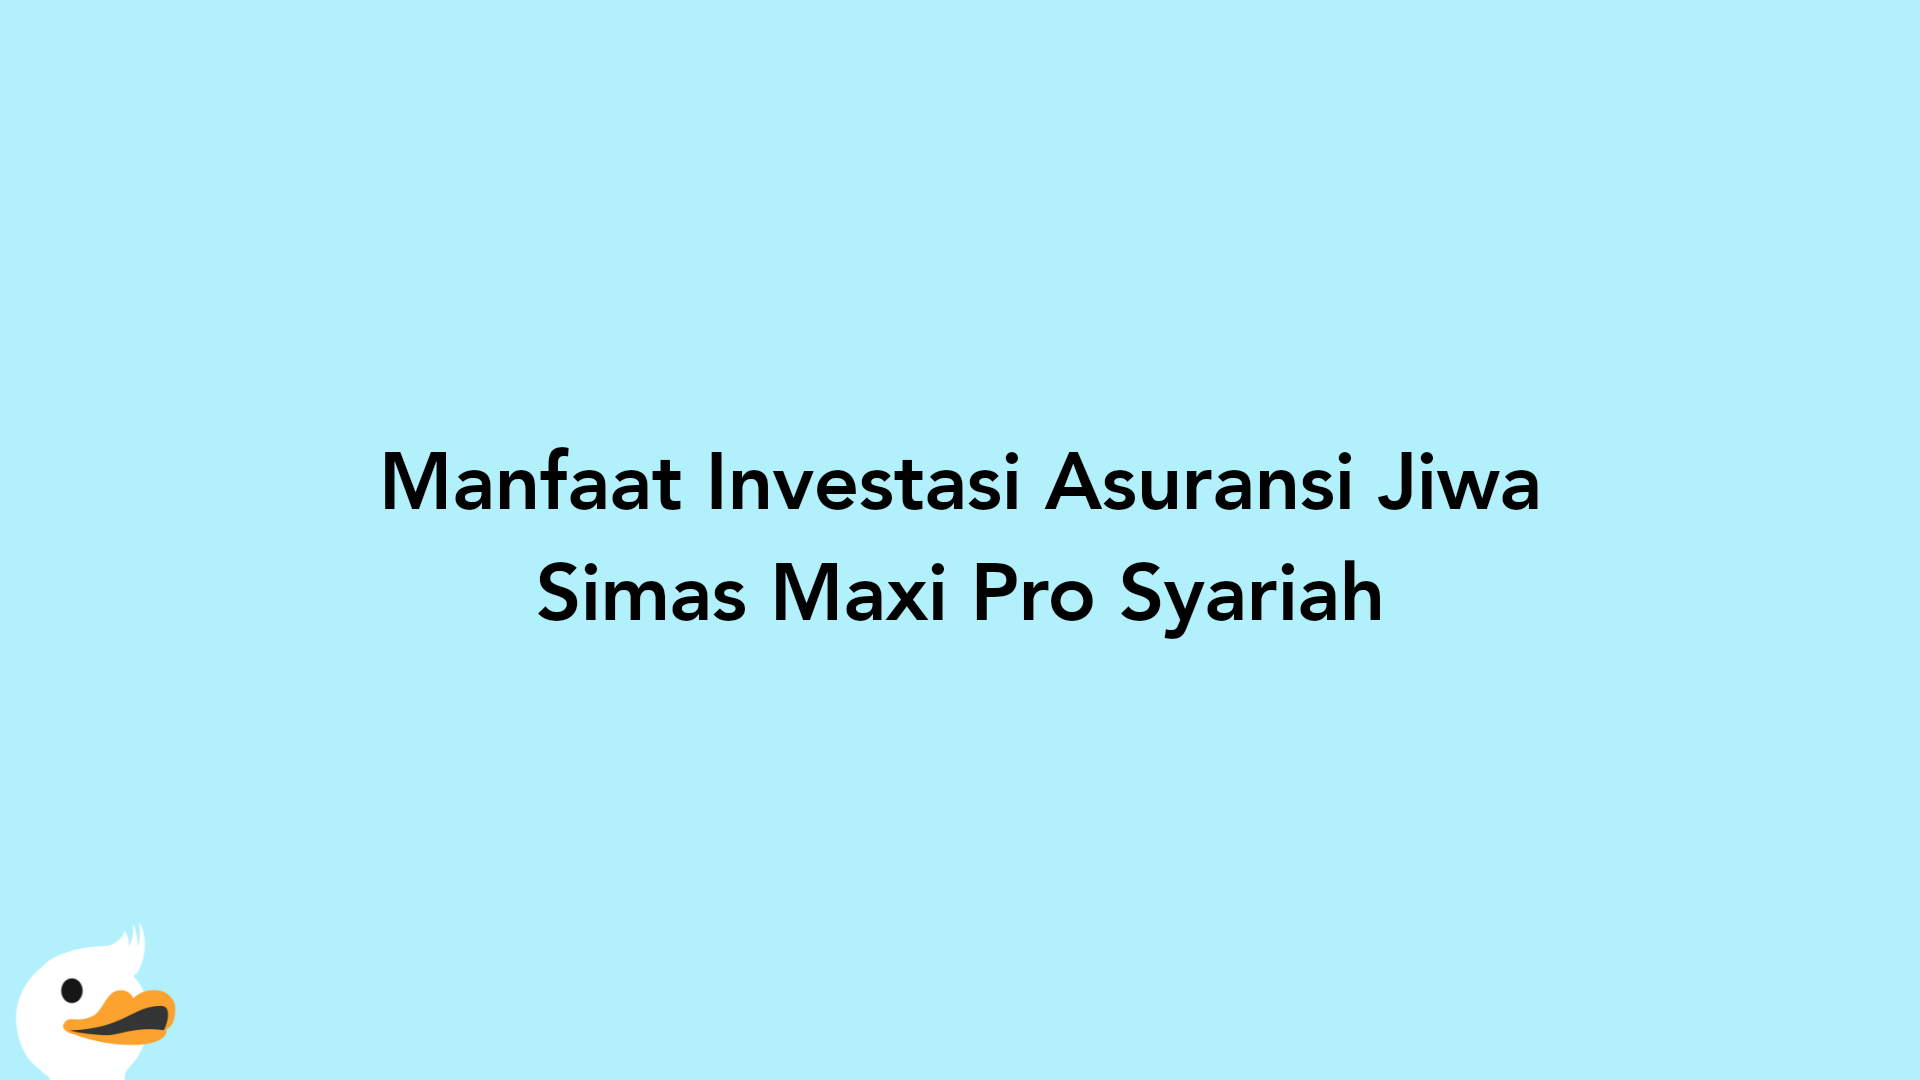 Manfaat Investasi Asuransi Jiwa Simas Maxi Pro Syariah